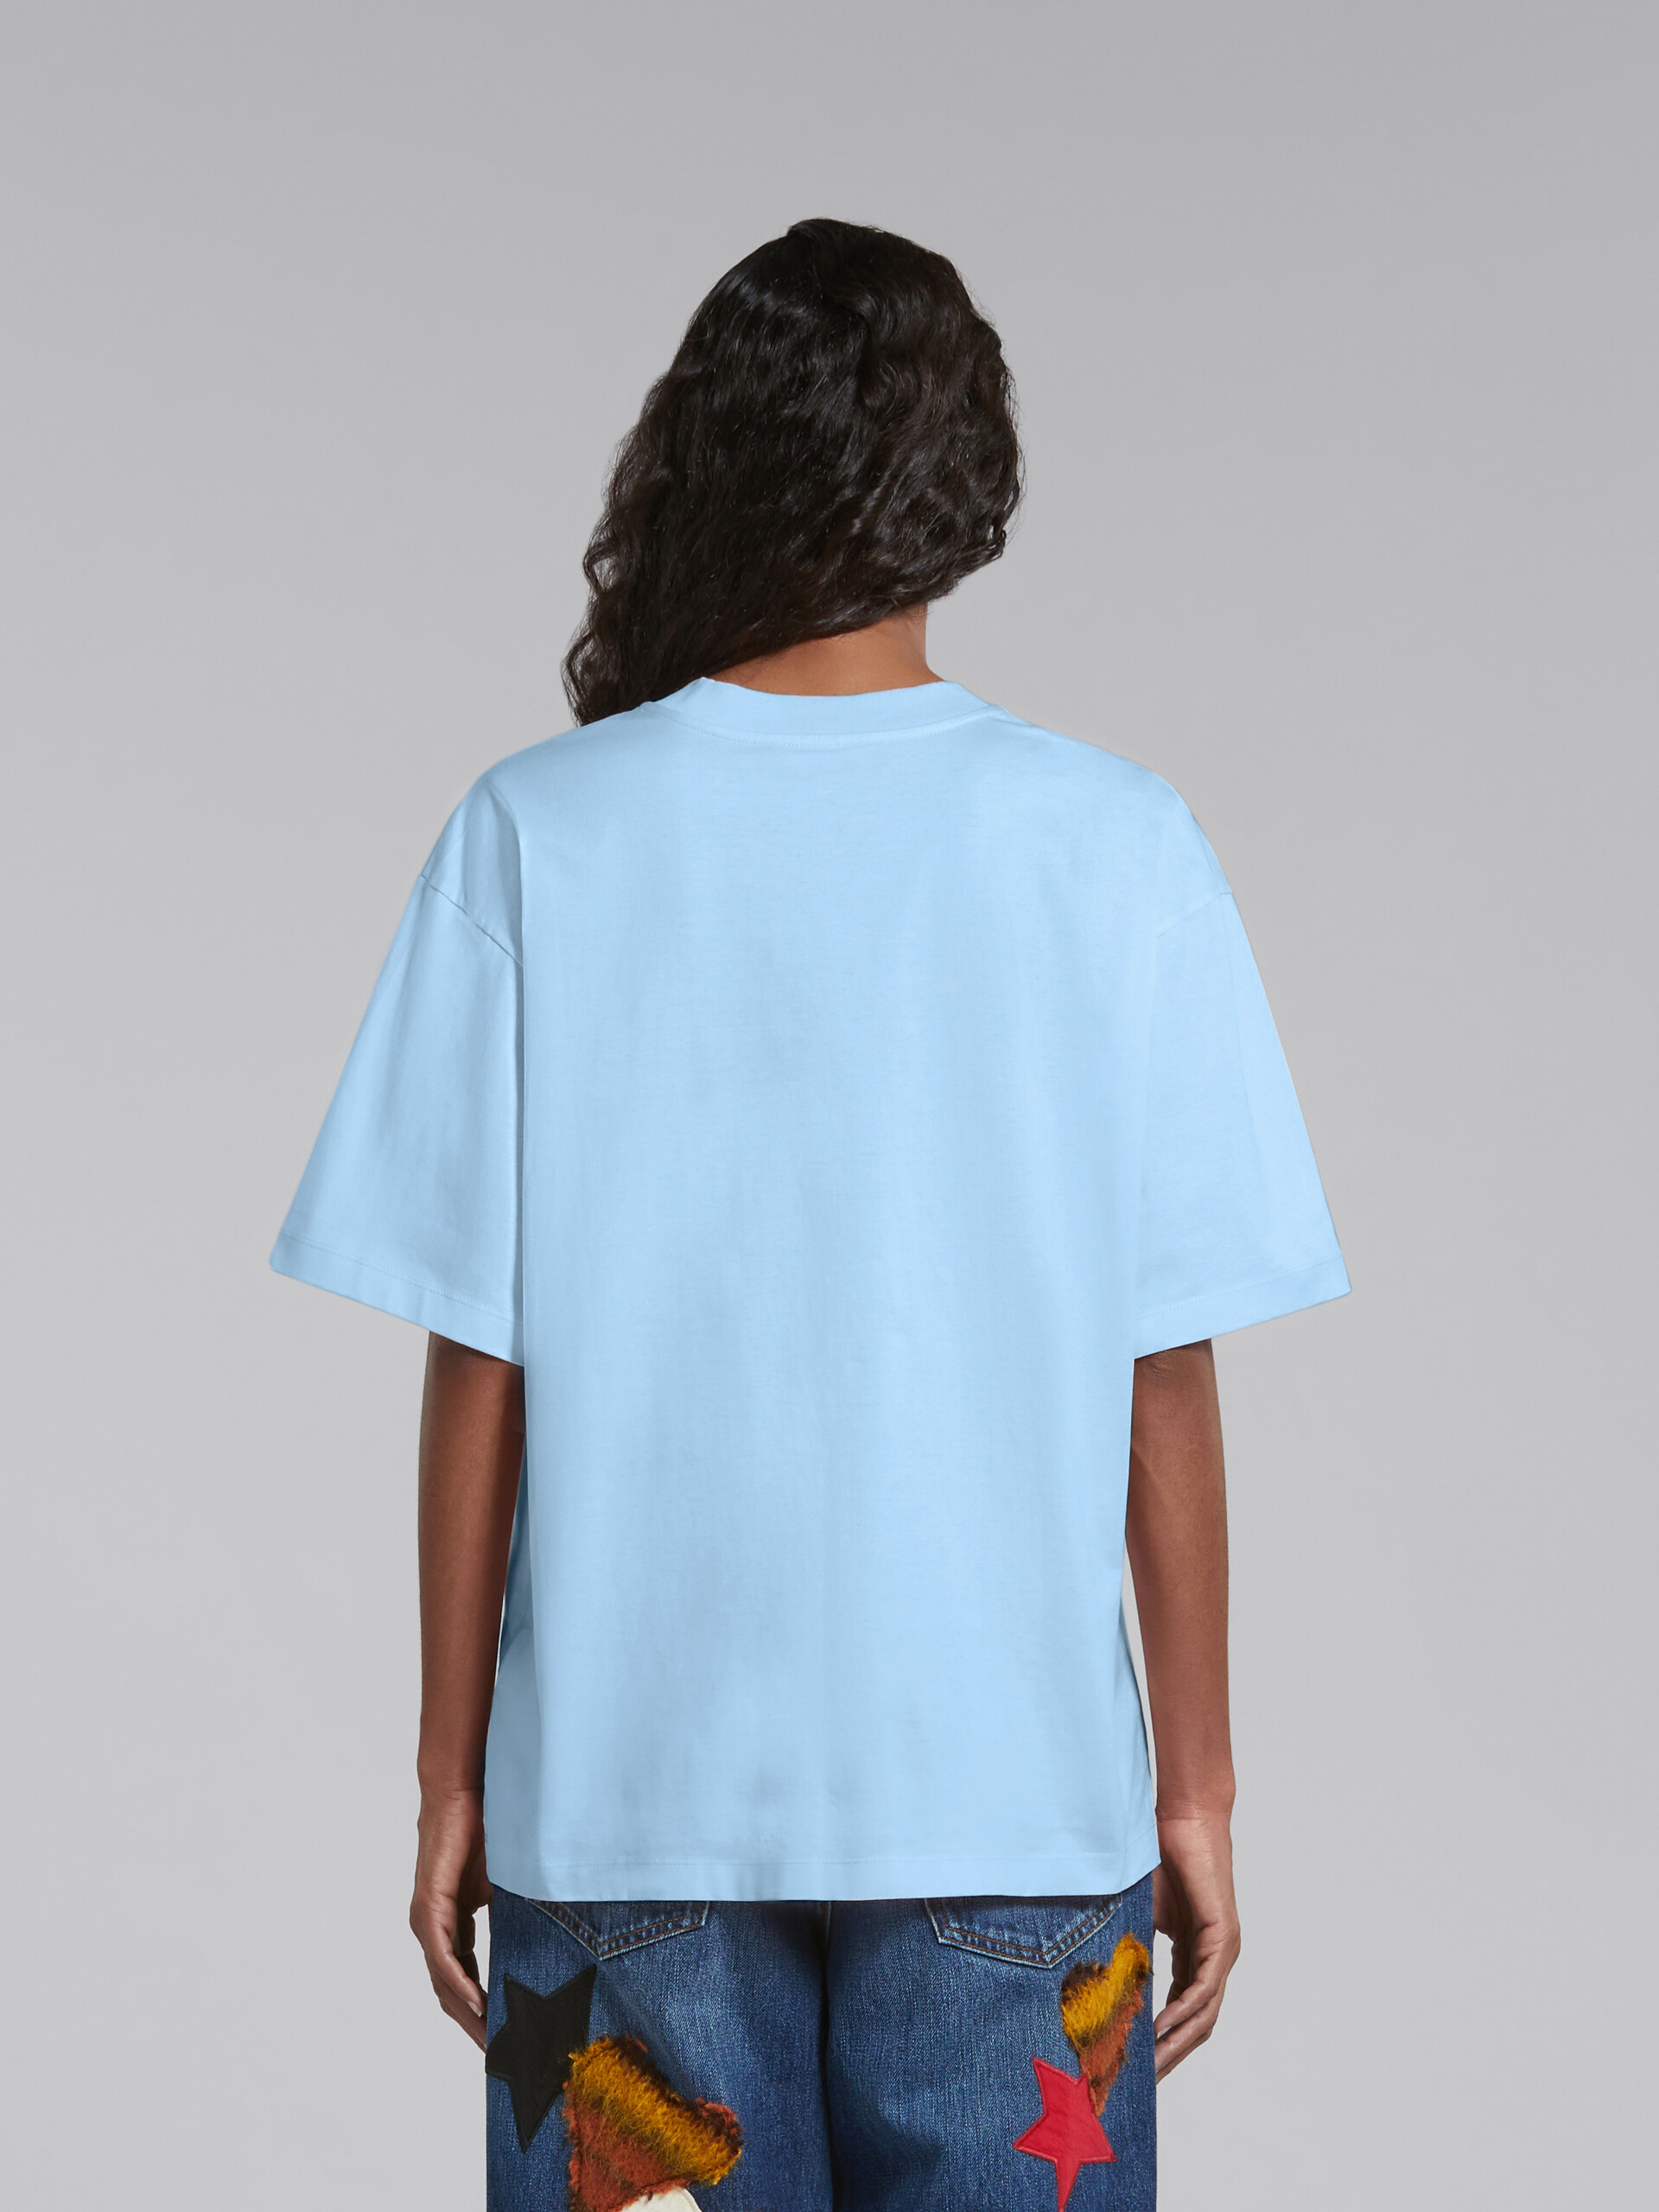 ブルー ロゴ入りオーガニックコットン製Tシャツ - Tシャツ - Image 3